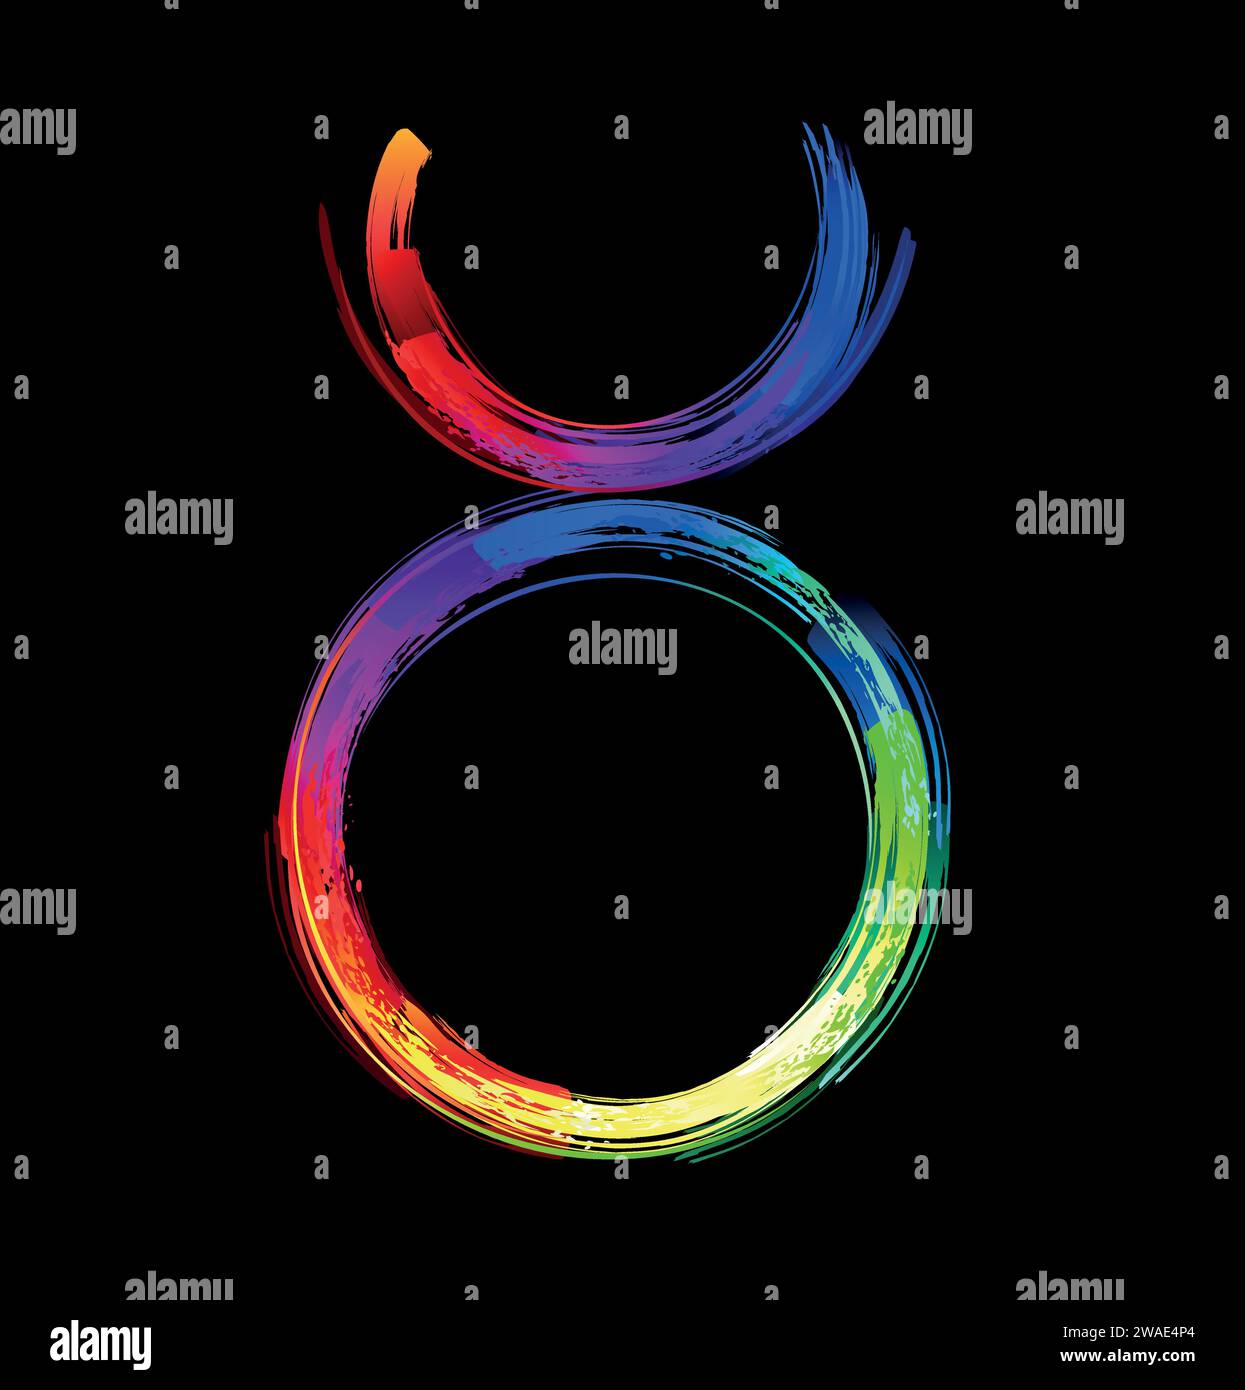 Sternzeichen Stier, gemalt mit großen Regenbogenstrichen, hell, mehrfarbig, leuchtend, Neonfarbe auf schwarzem Hintergrund. Zodiac-Symbol. Stock Vektor